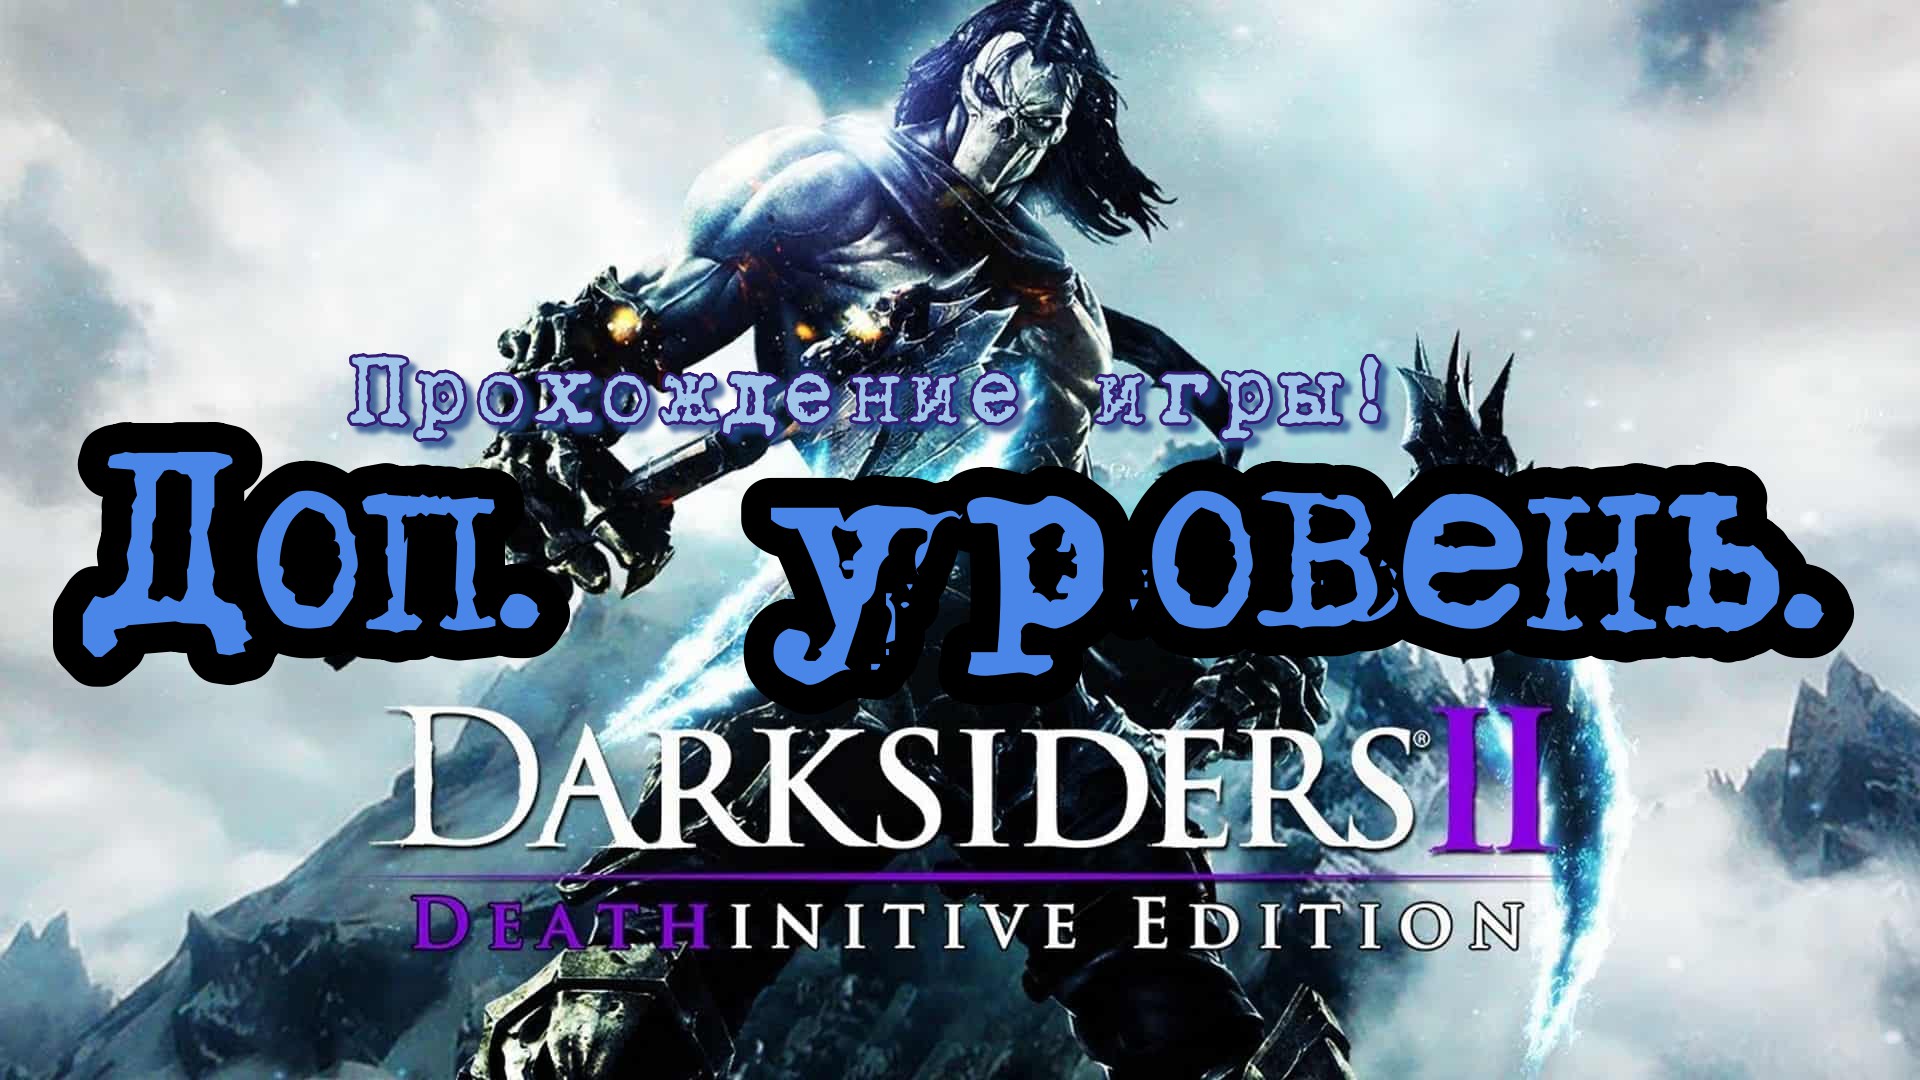 Прохождение игры - Darksiders 2 # 1. (Гробница  Аргула) PC - HD - Full 1080p.